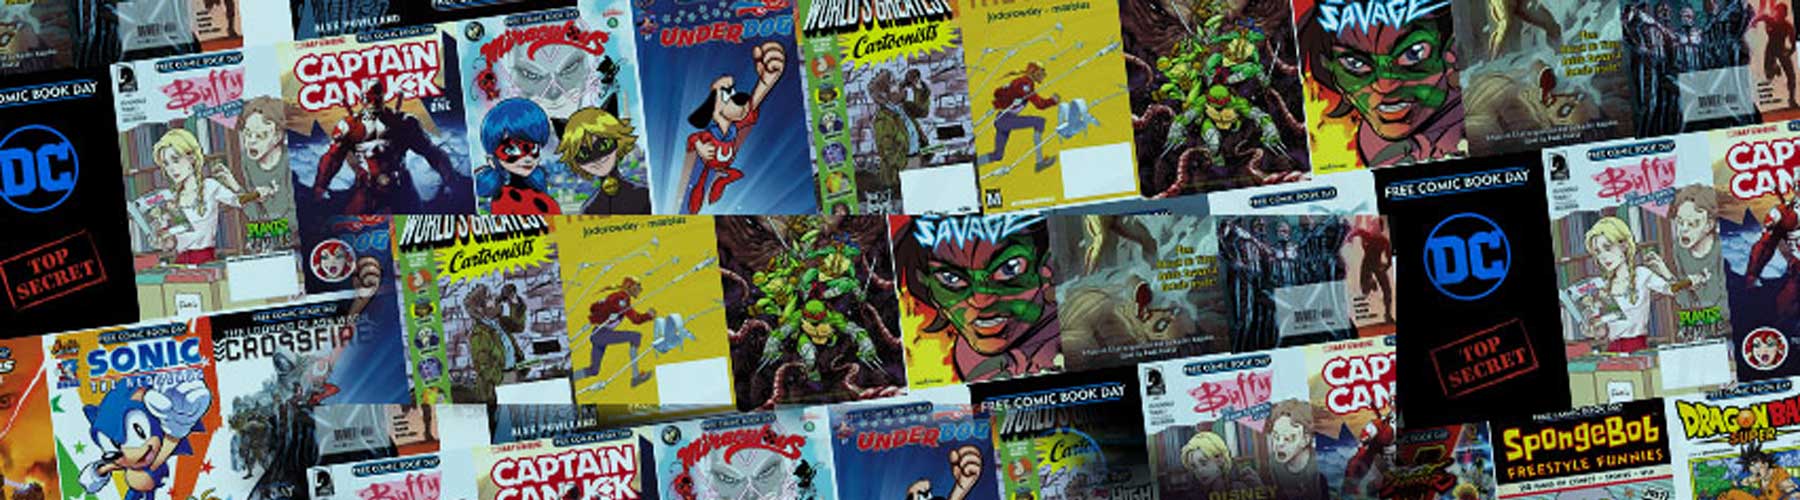 Hawkeye Graphic Novels